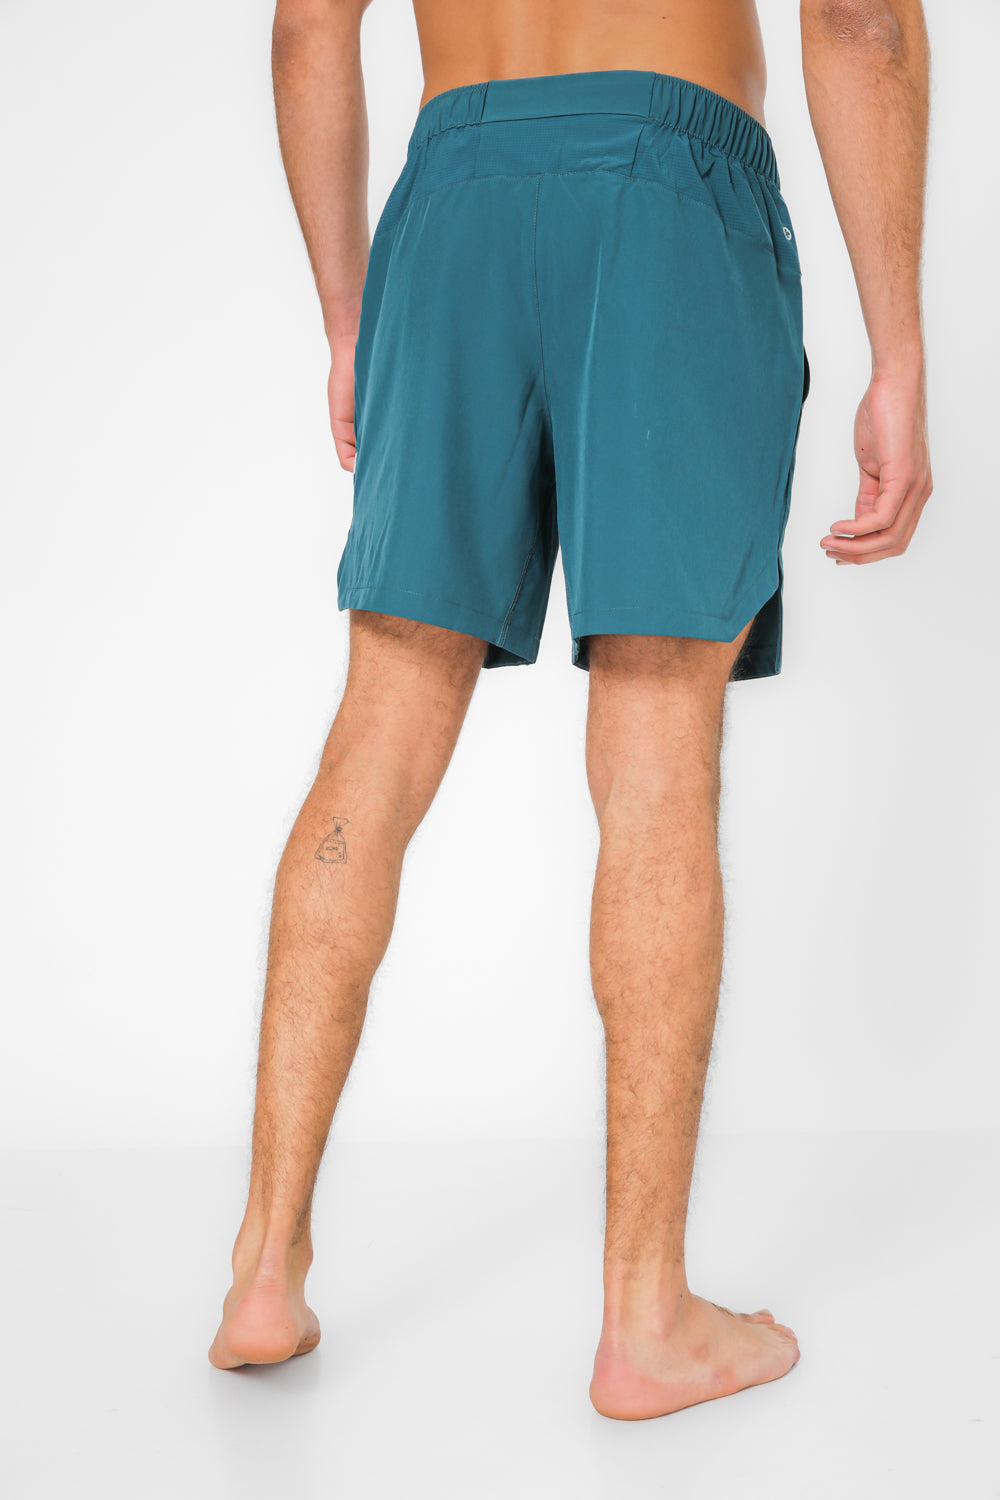 מכנסי ריצה קצרים אורך 7 אינץ’ ACTIVE בצבע טורקיז